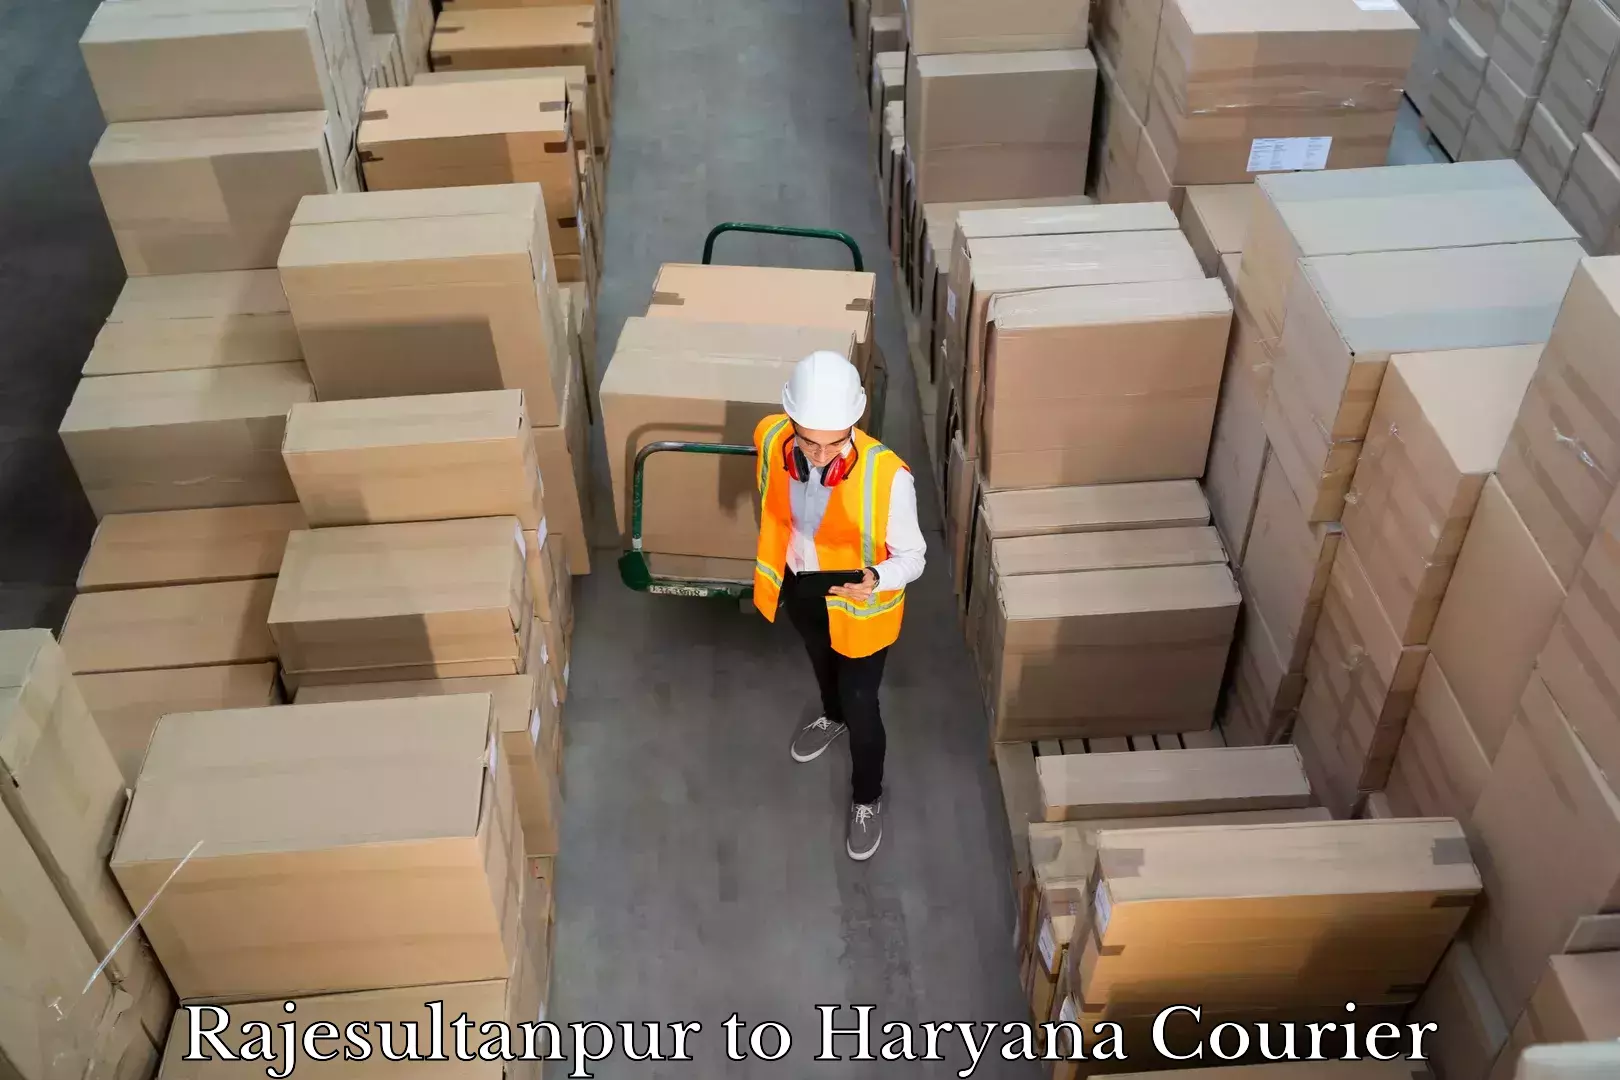 Emergency baggage service Rajesultanpur to Haryana